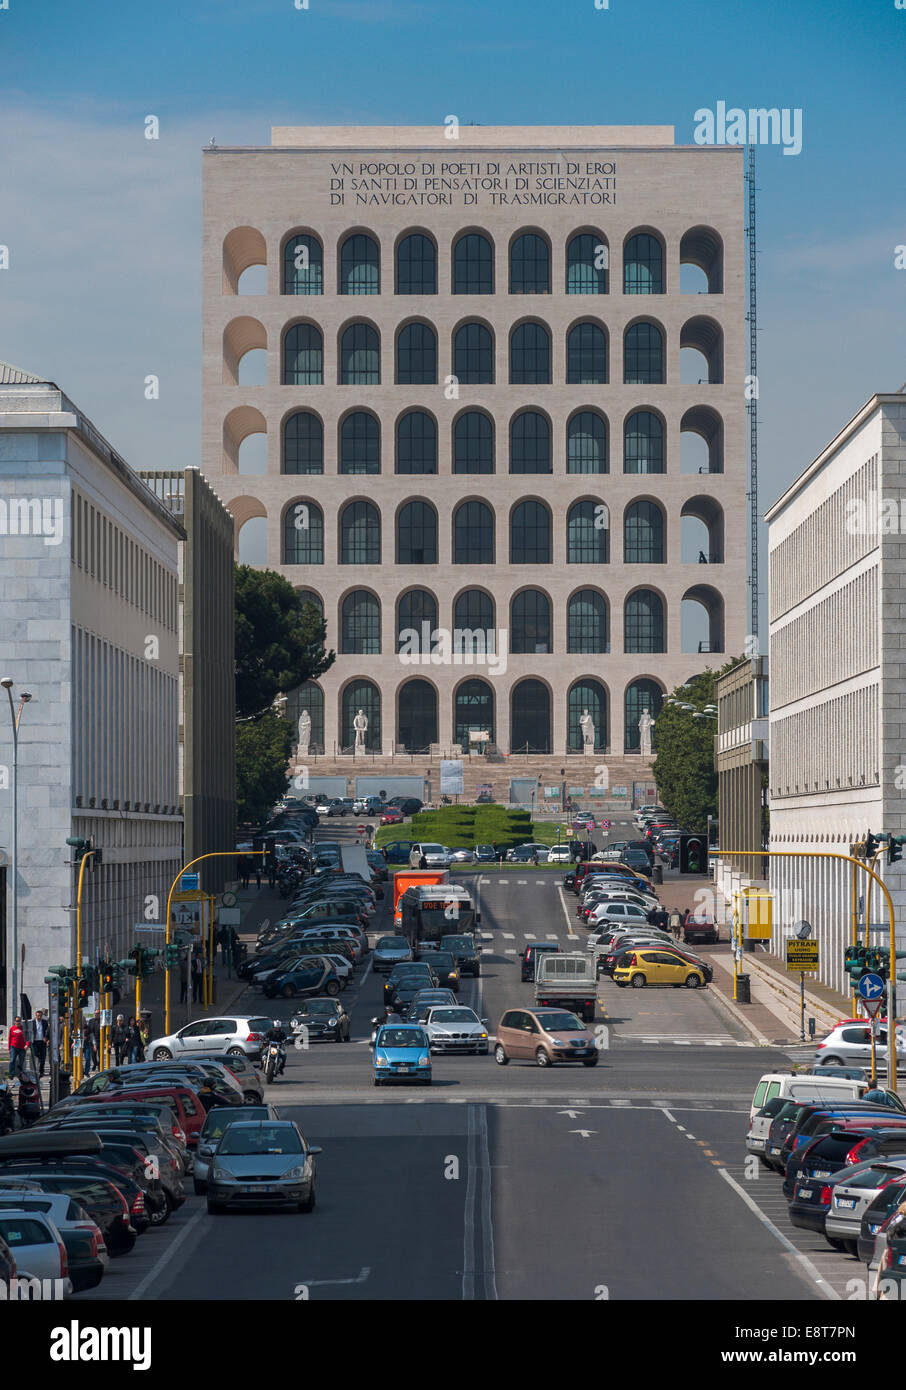 Palazzo della Civiltà Italiana, Palais de la civilisation italienne, également connu sous le nom de Colosseo Quadrato, achevée en 1943, EUR Banque D'Images